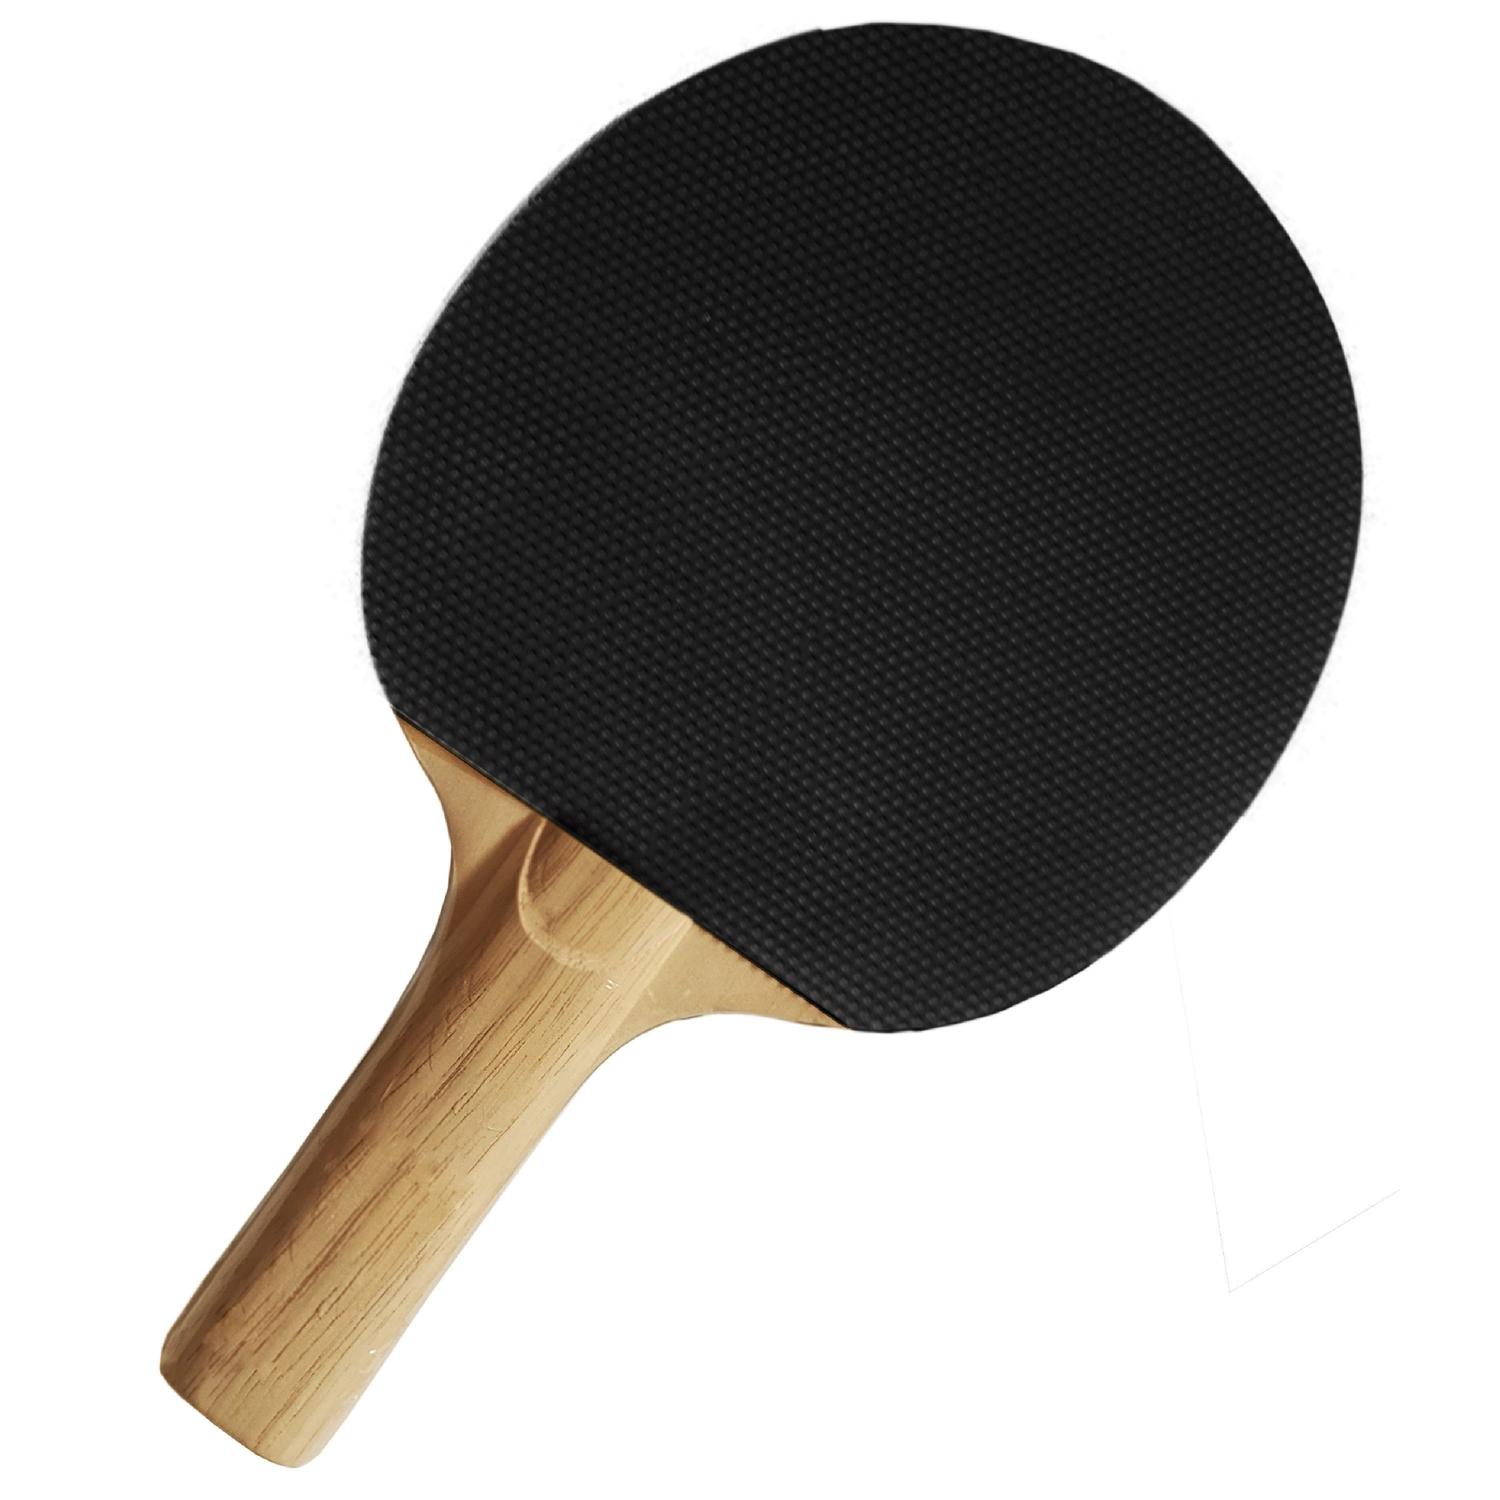 Raquete De Tênis De Mesa Ping-Pong Klopf Cód. 5012